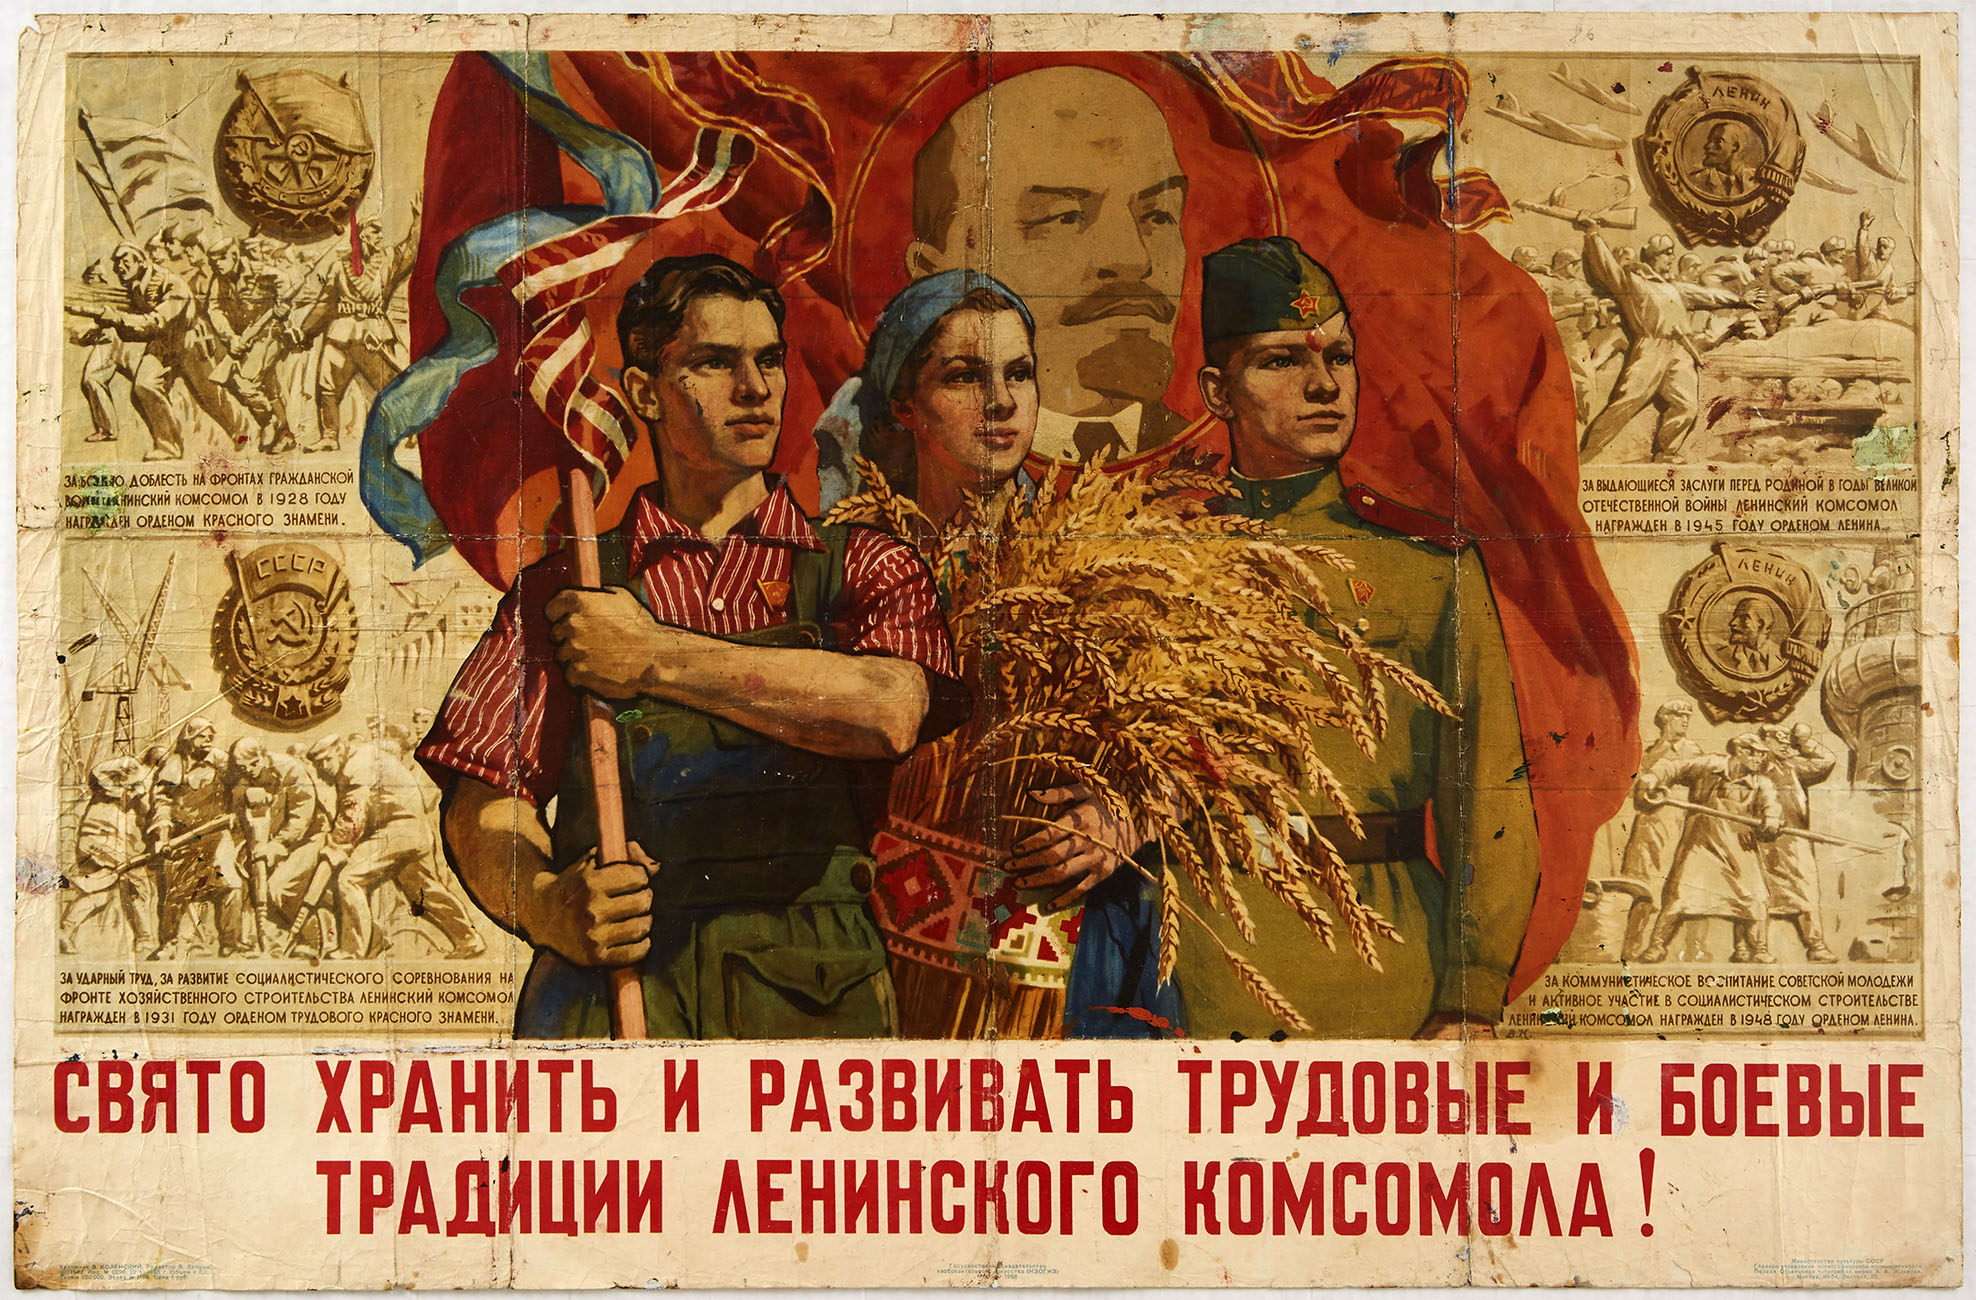 Original Propaganda Poster USSR Komsomol Traditions